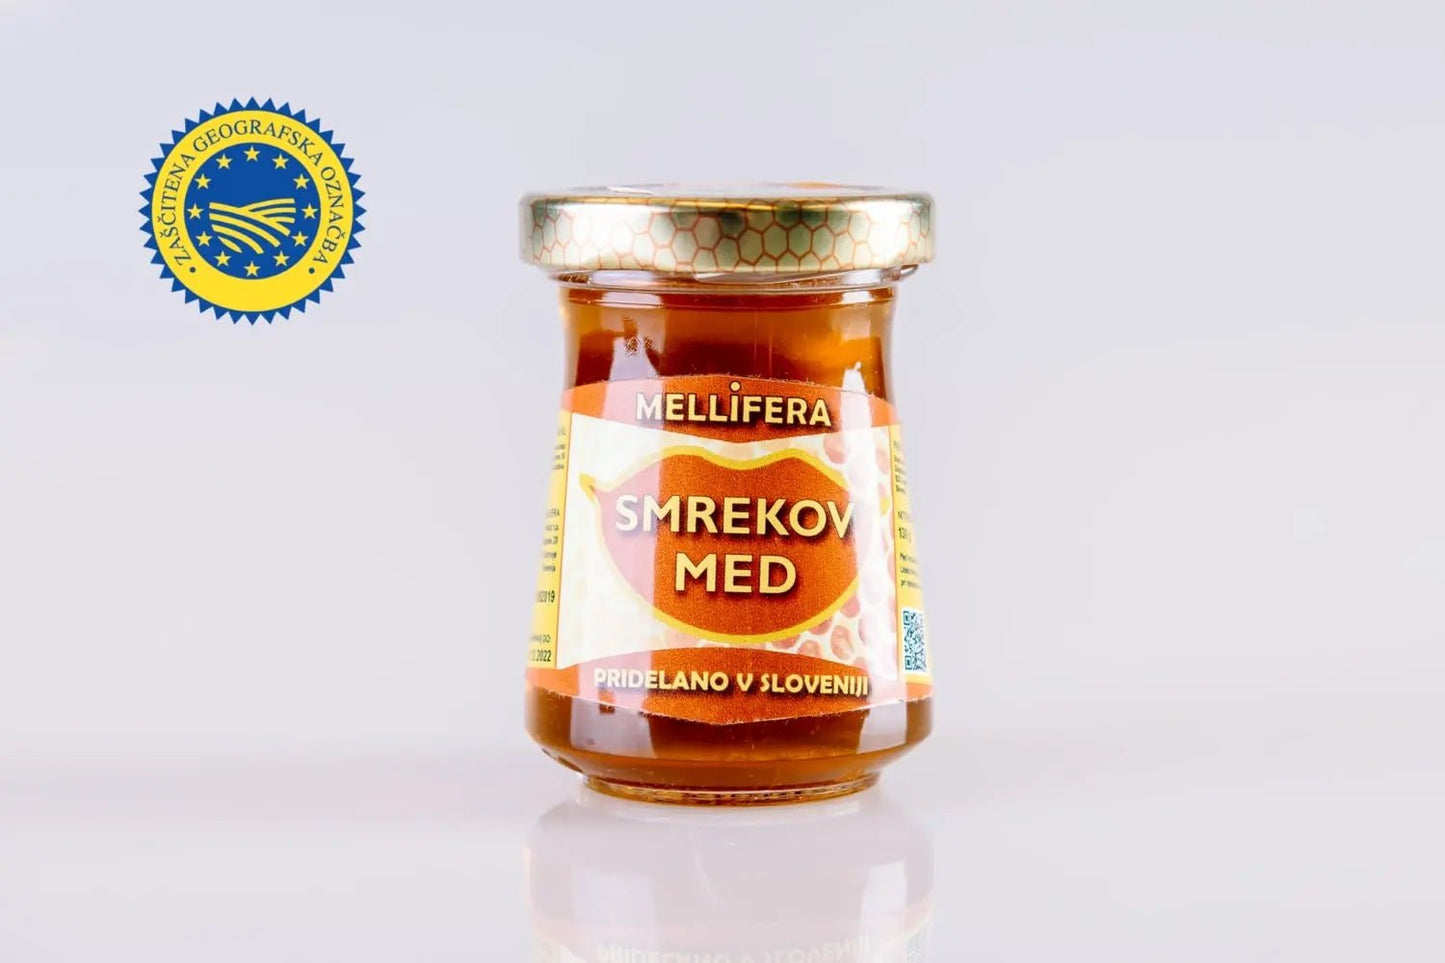 Smrekov med - Mellifera